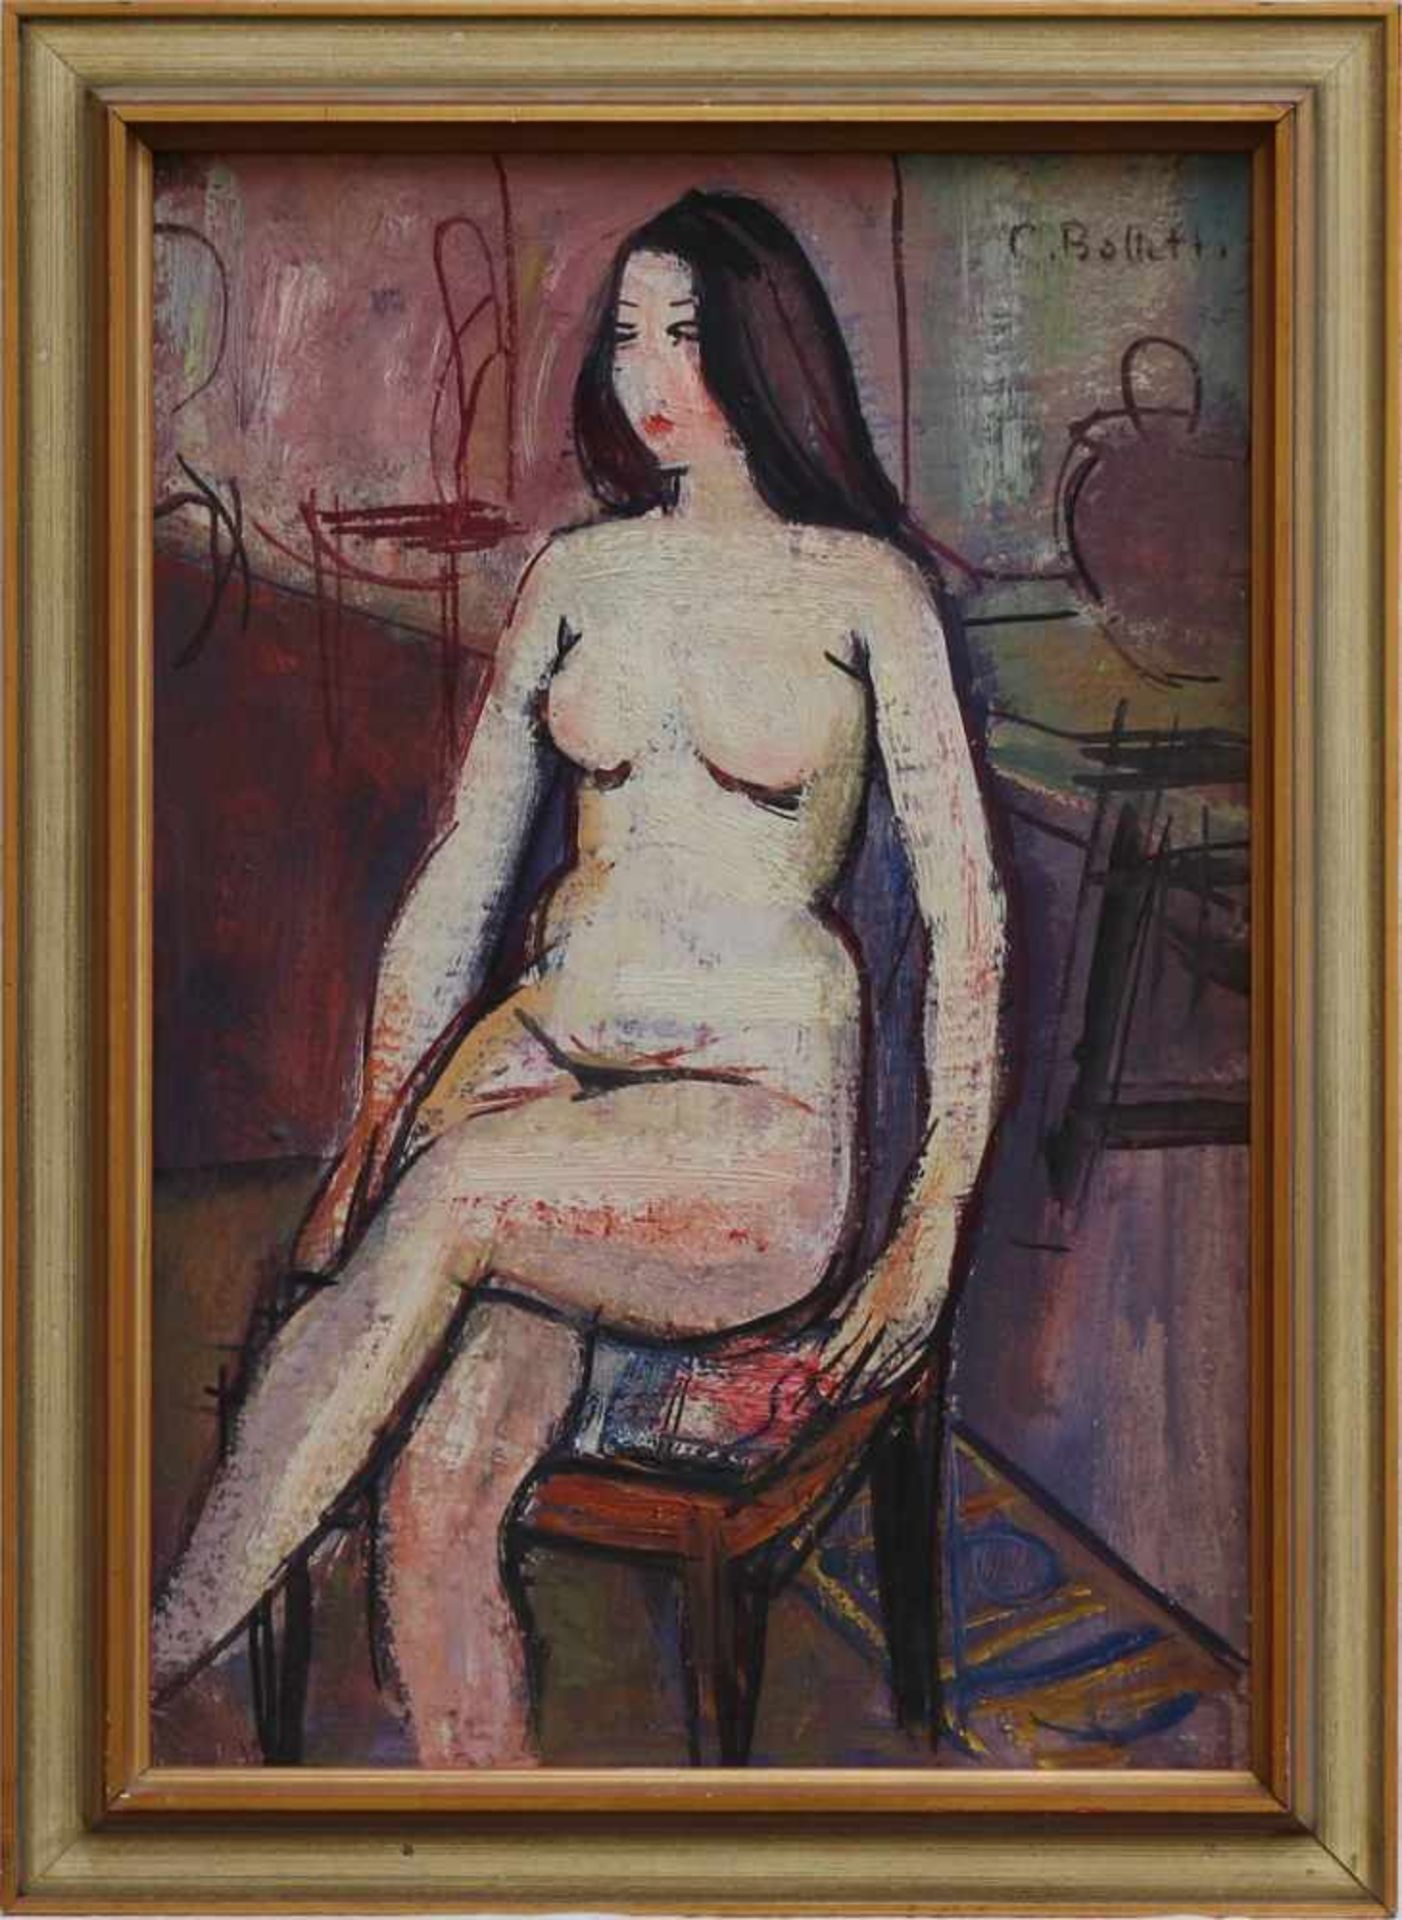 Bolletti, César 1914 Nizza - 1995 Roquefort-les-Pins, "Frauenakt auf dem Stuhl", reduzierte